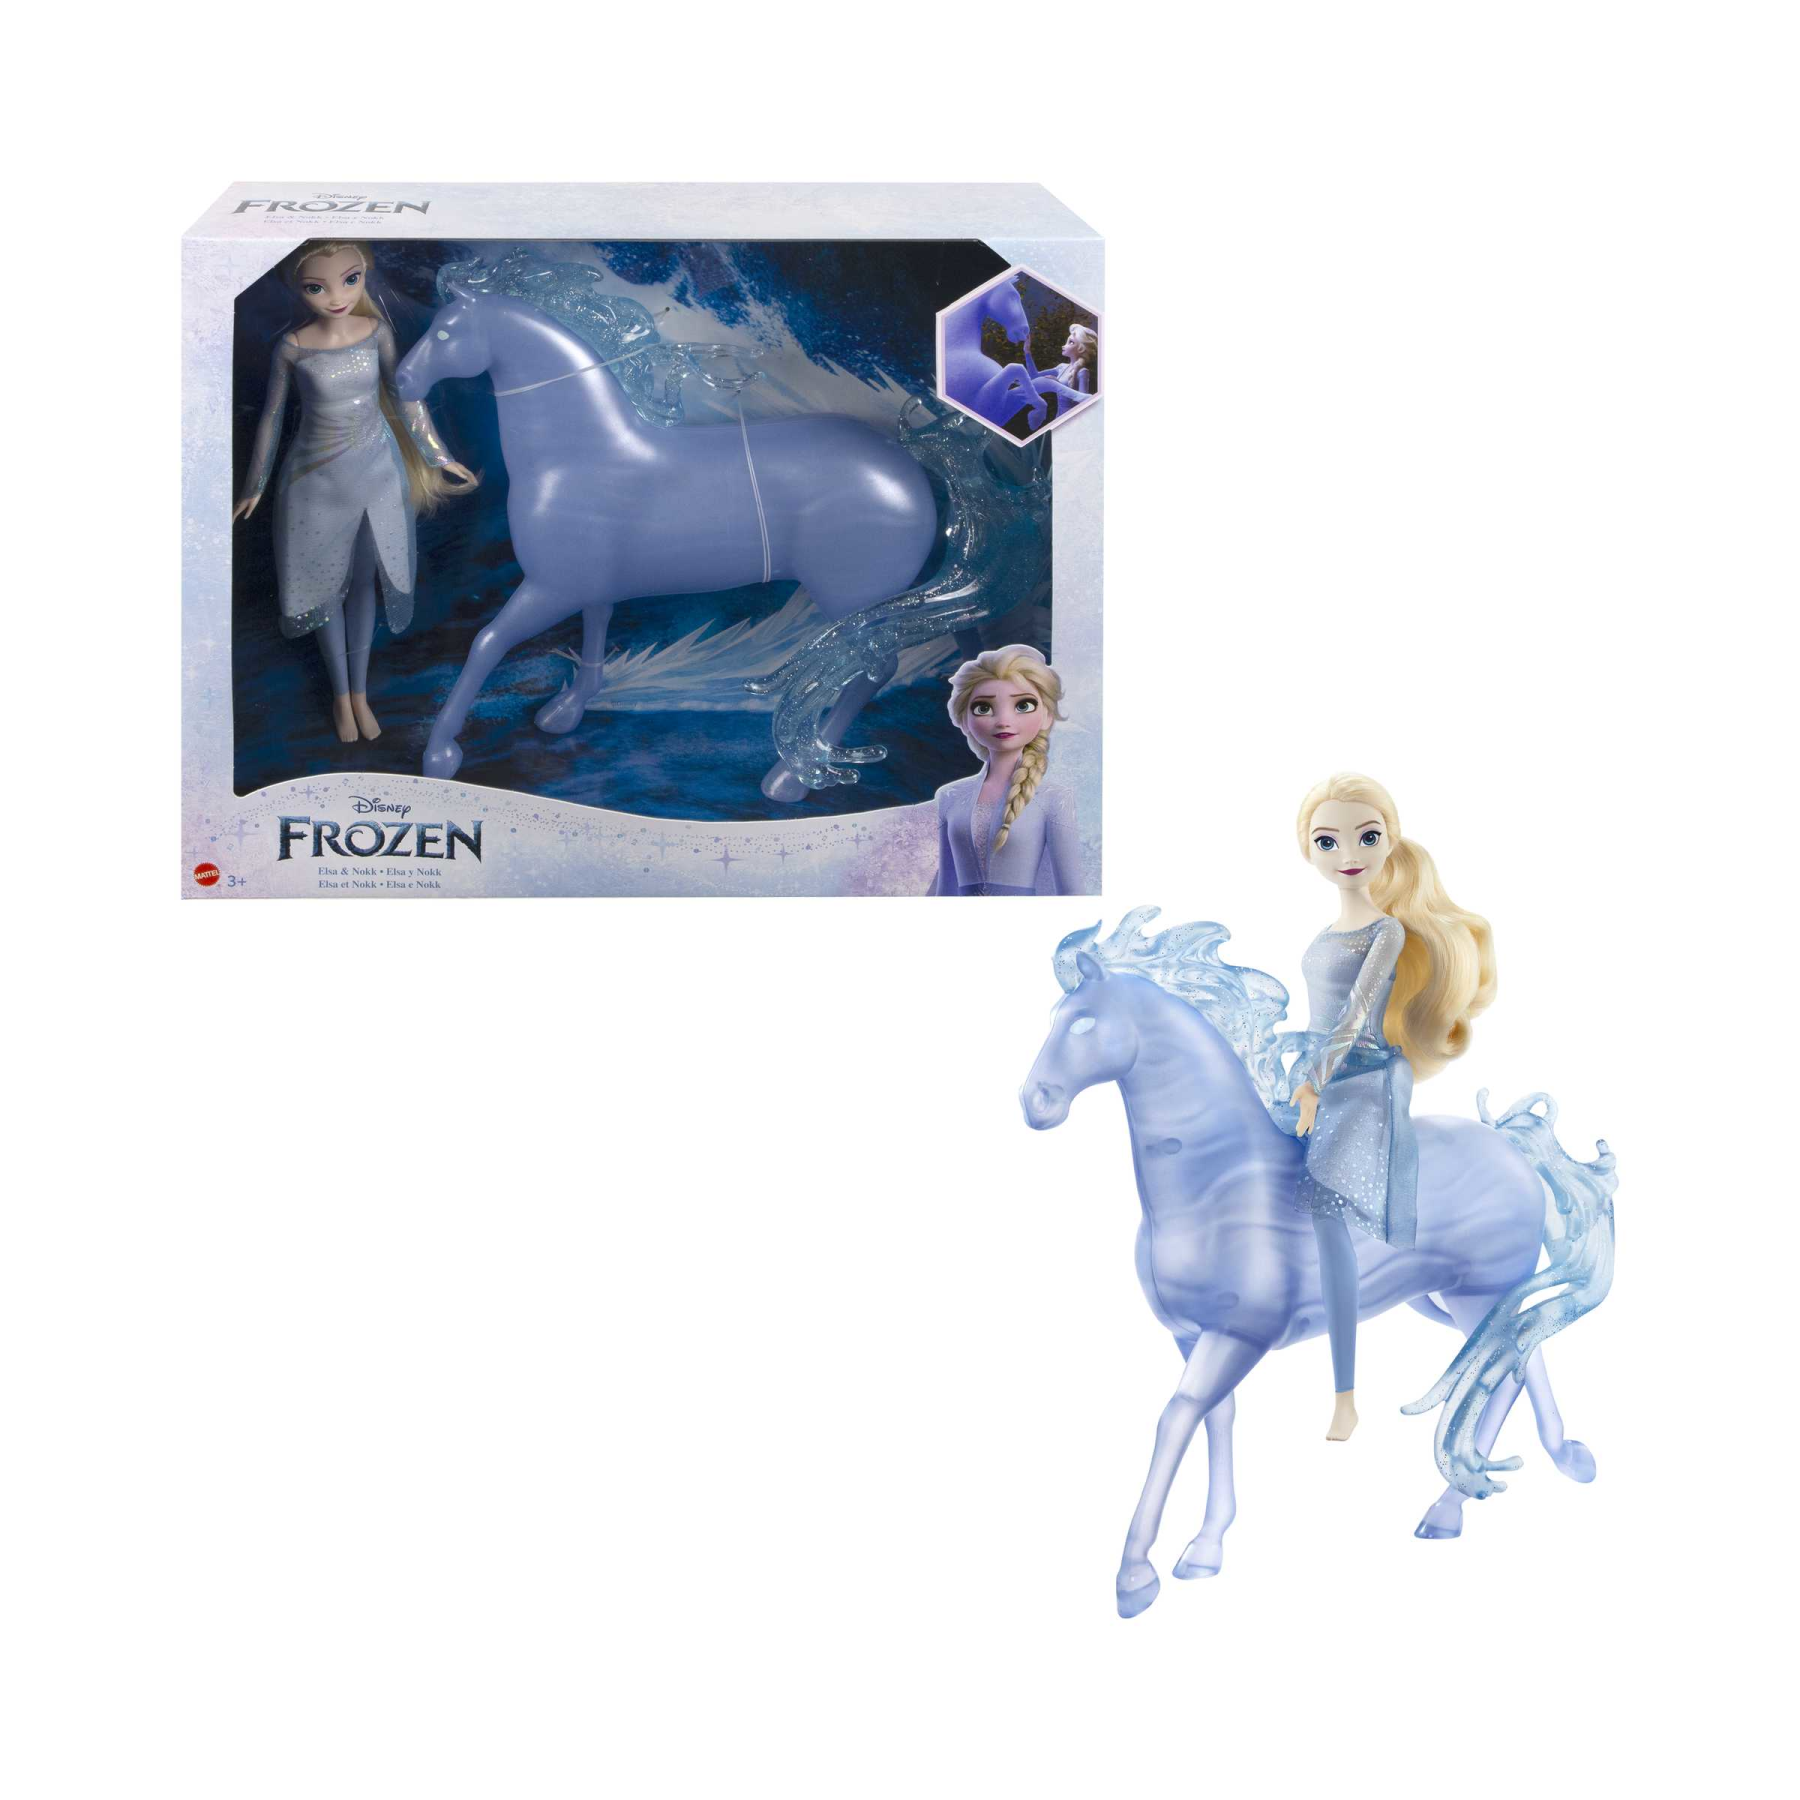 Disney frozen - elsa e nook, set con bambola con abito azzurro e creatura acquatica a forma di cavallo, ispirati al film disney frozen 2, 3+ anni, hlw58 - DISNEY PRINCESS, Frozen